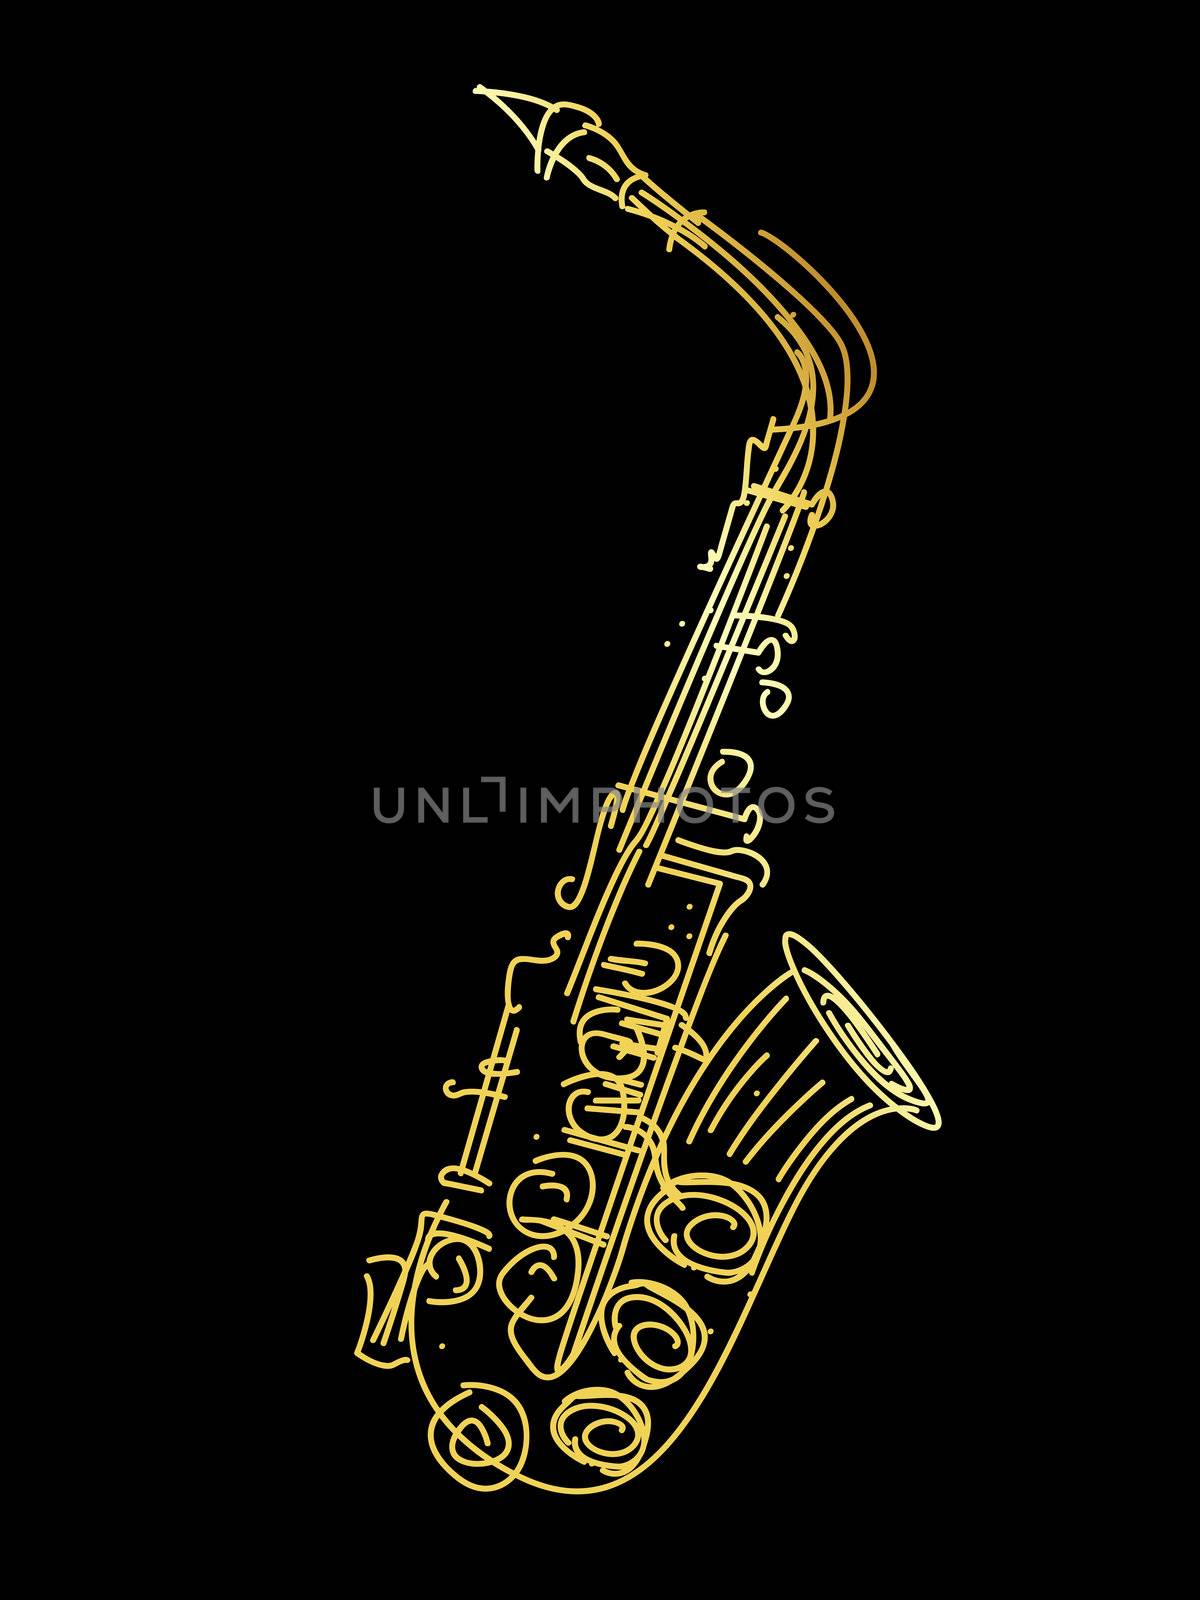 A golden saxophone by Lirch